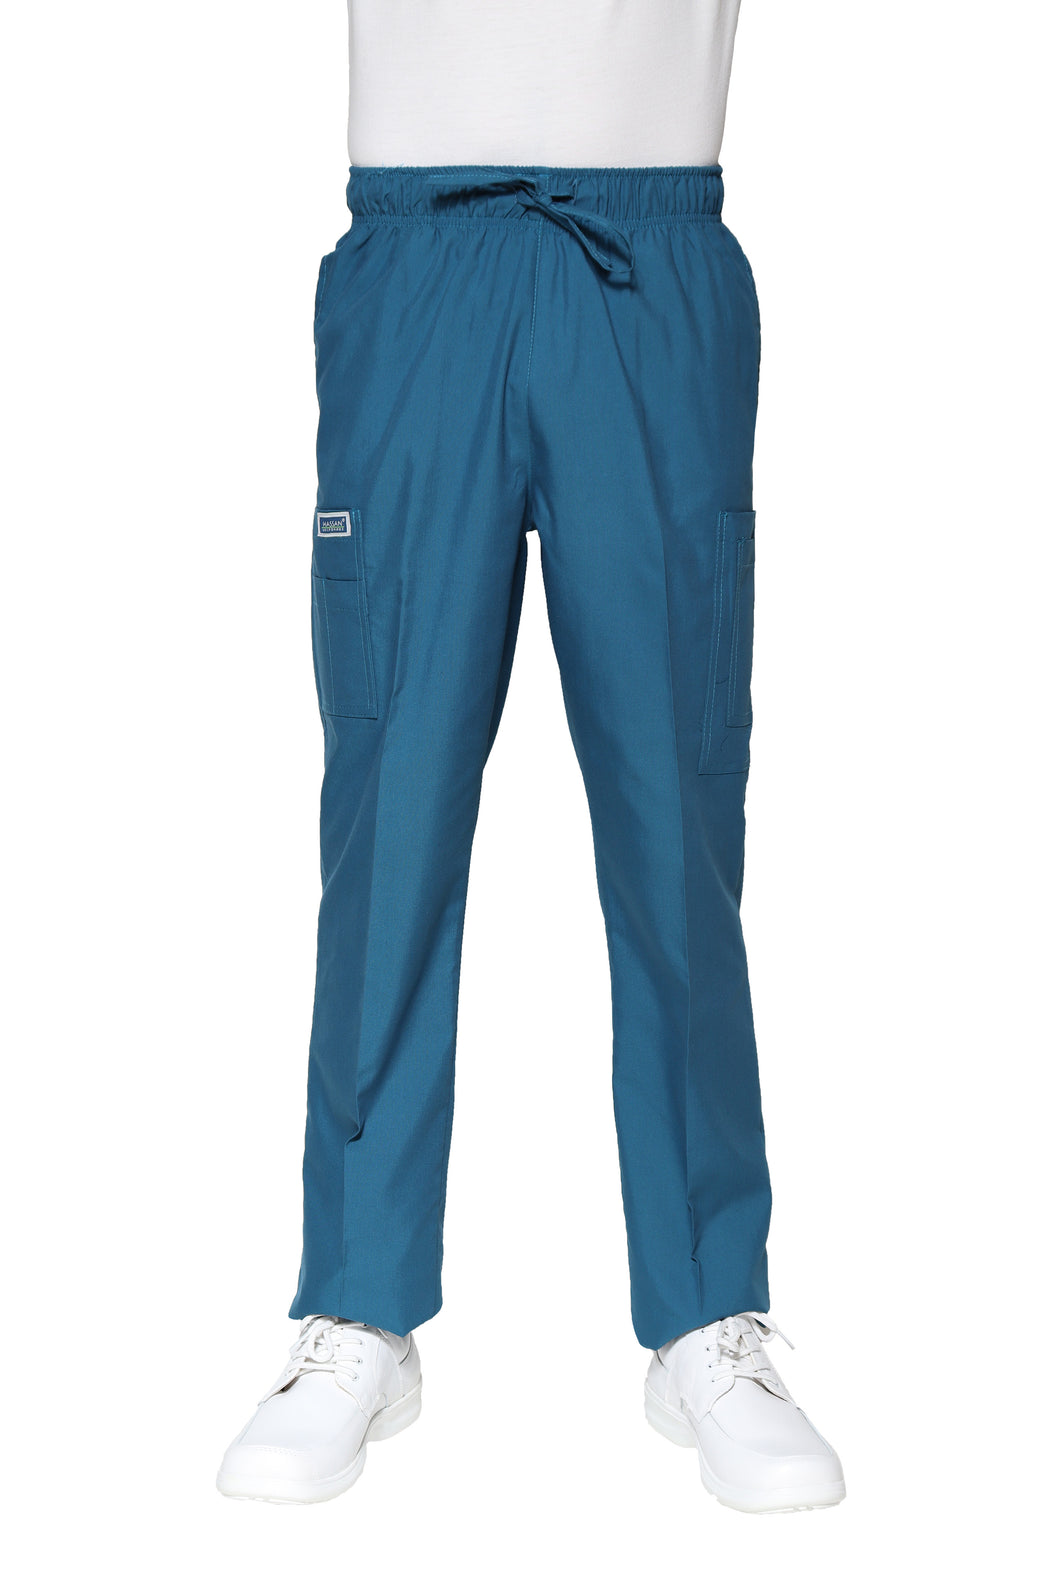 Pantalón Pant HA-25P-TELA SPORT-Color CARIBE-HOMBRE-HASSAN Uniformes